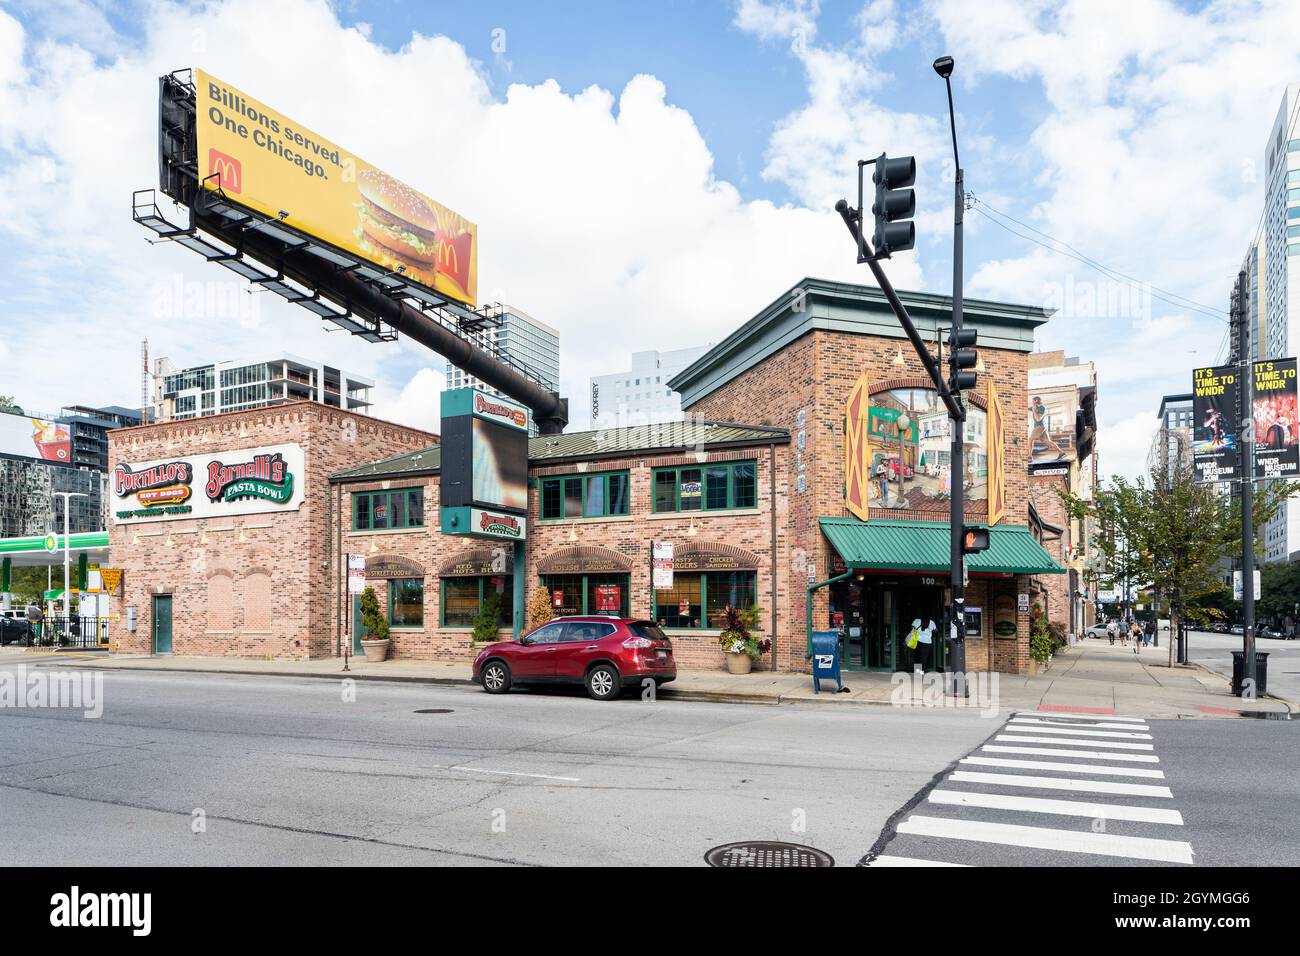 Portillo's und Bernelli's sind eine Lebensmittelkette aus Chicago, die für ihre Hot Dogs, italienischen Rindfleisch-Sandwiches und andere Fast Food-Produkte bekannt ist. Stockfoto